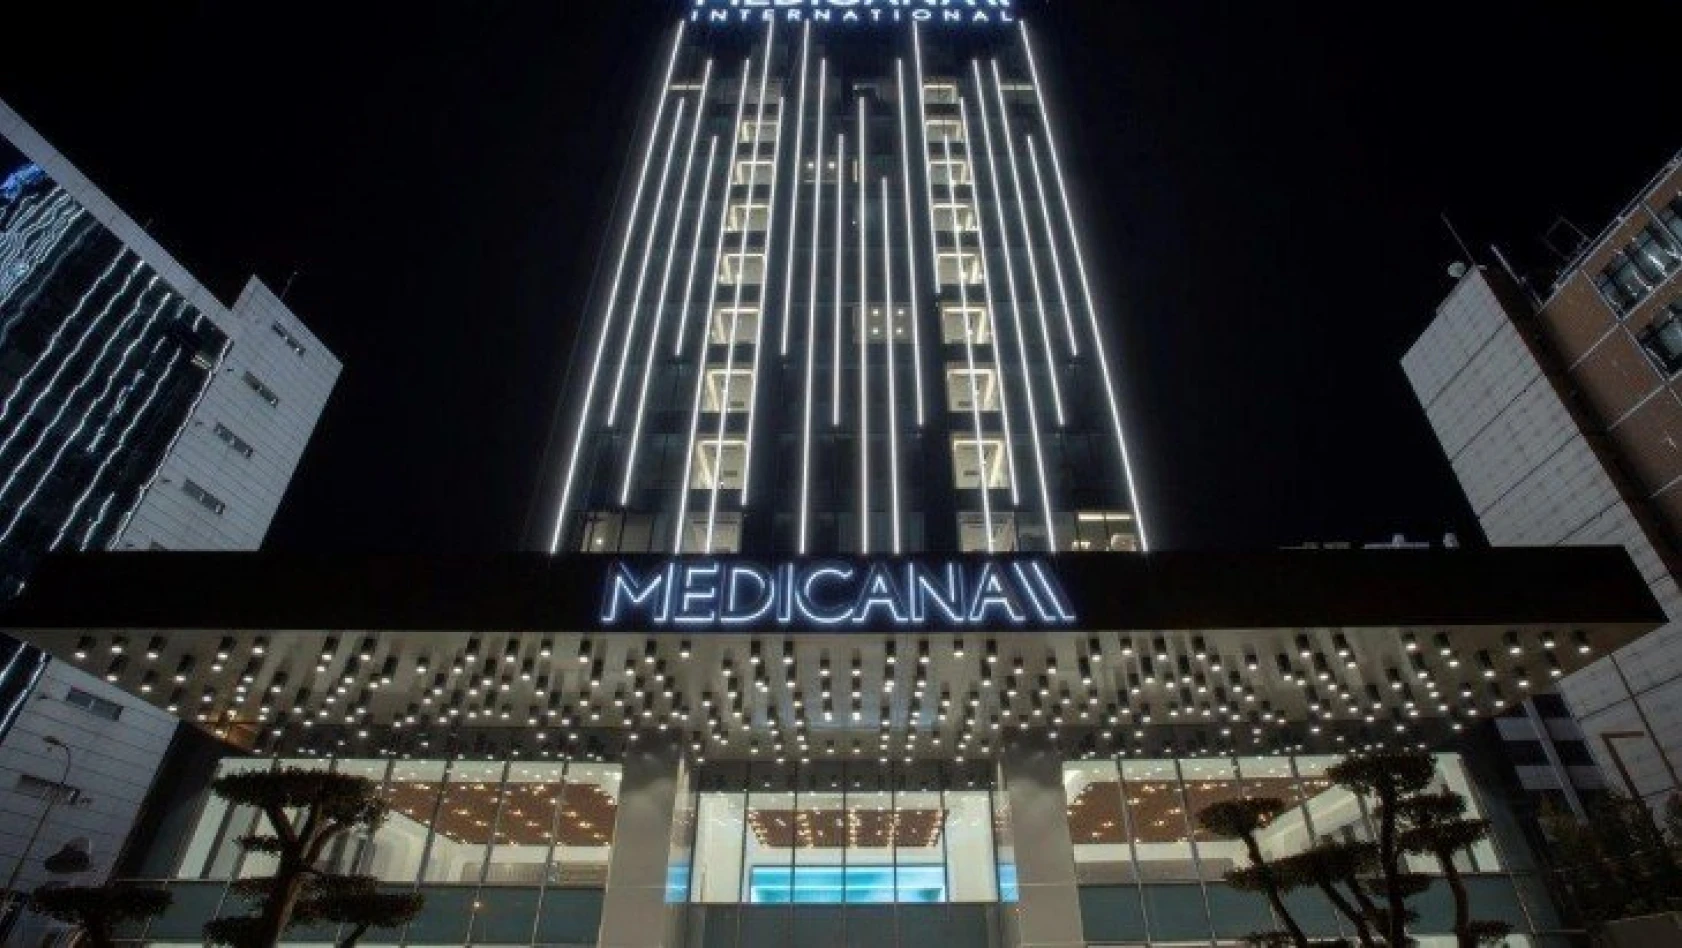 Medicana Ataşehir Hastanesi hizmete açıldı